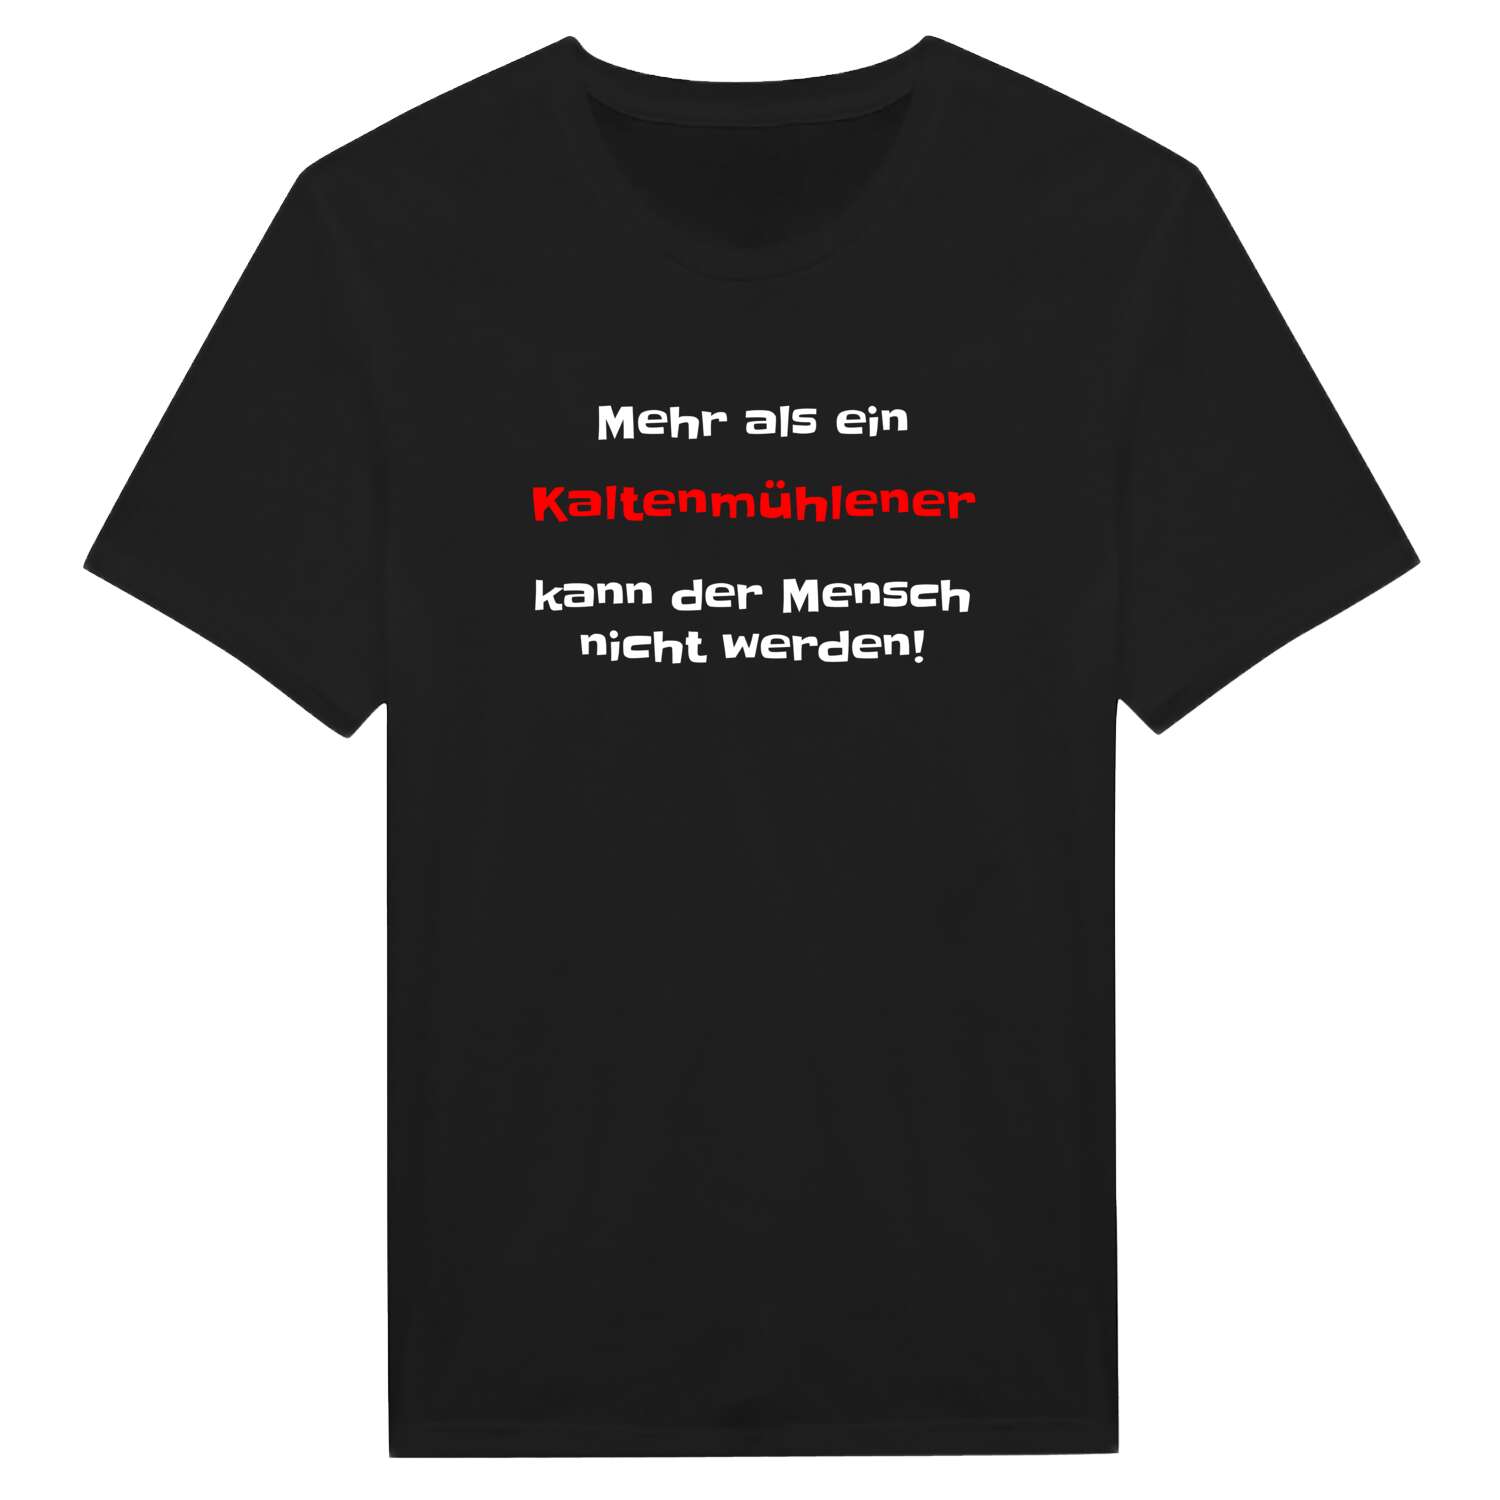 Kaltenmühle T-Shirt »Mehr als ein«